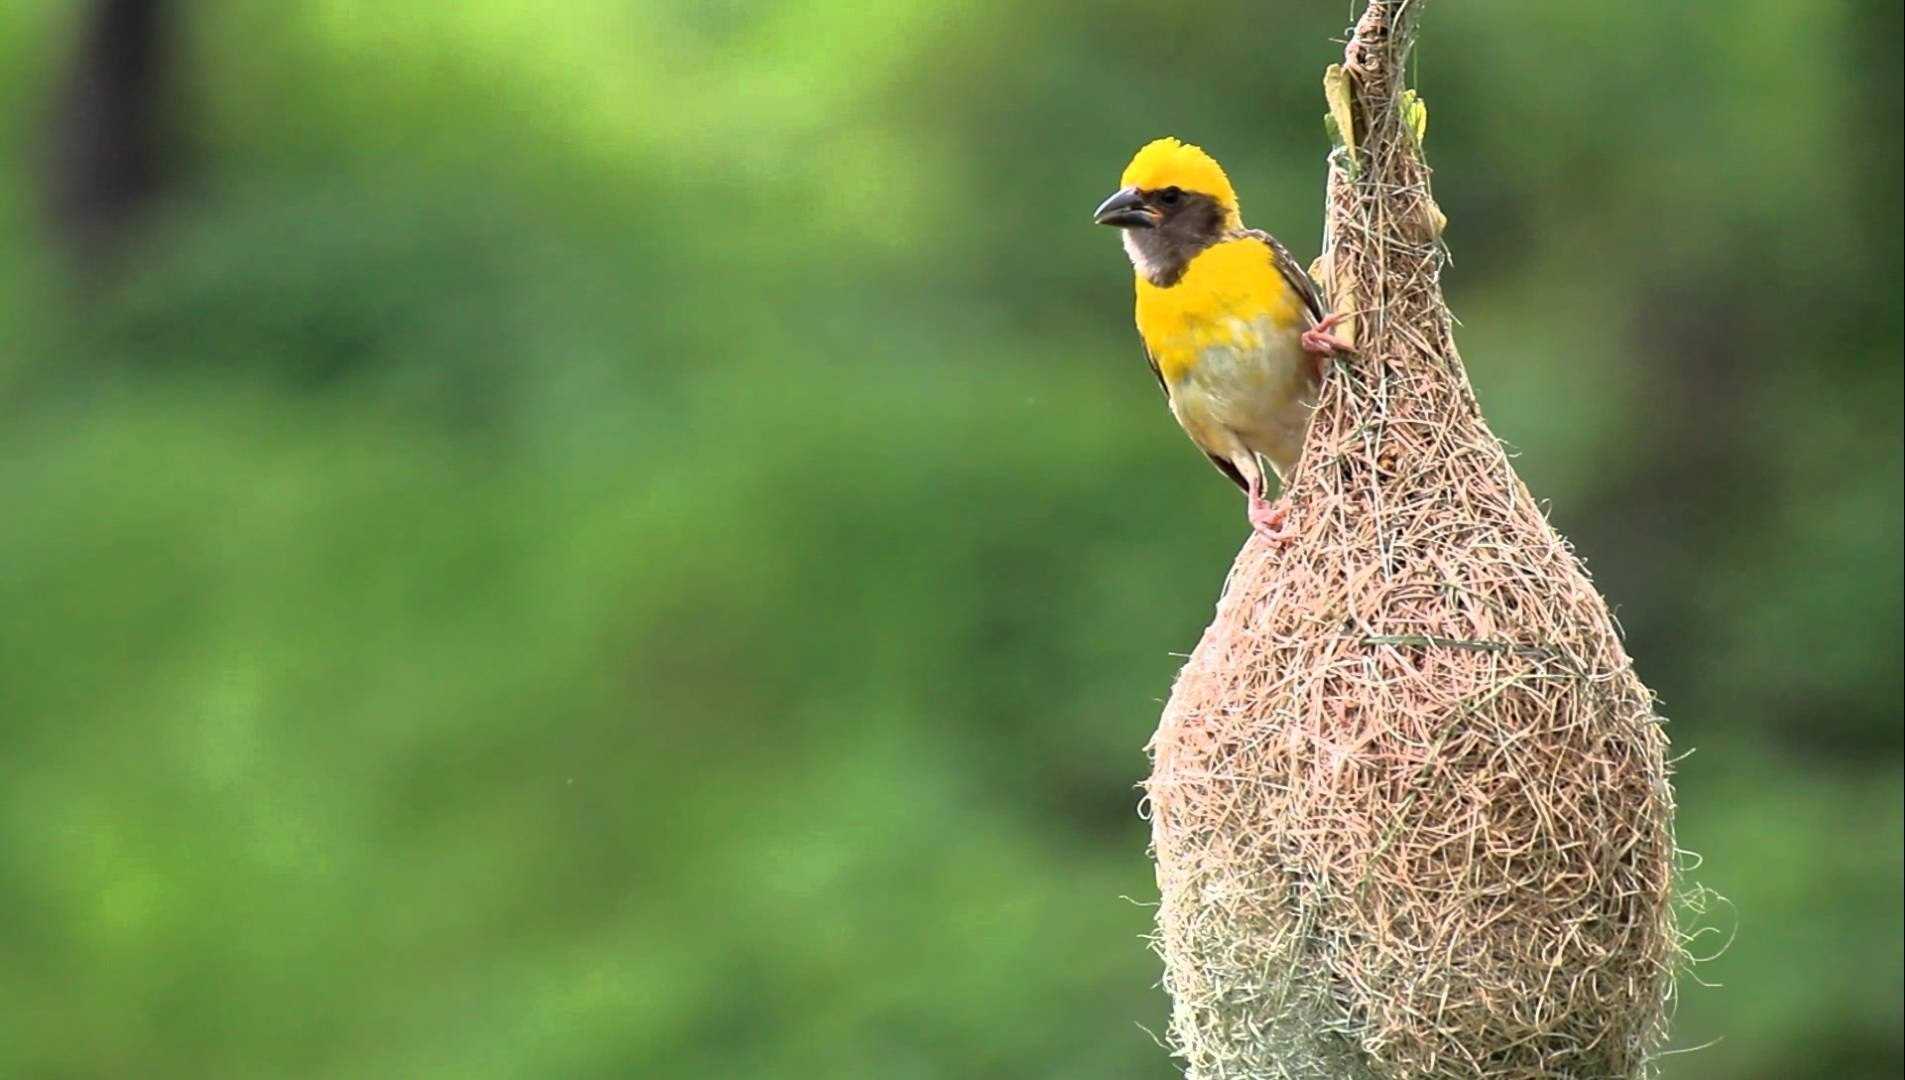 Птицы ткачики и фото их гнезда